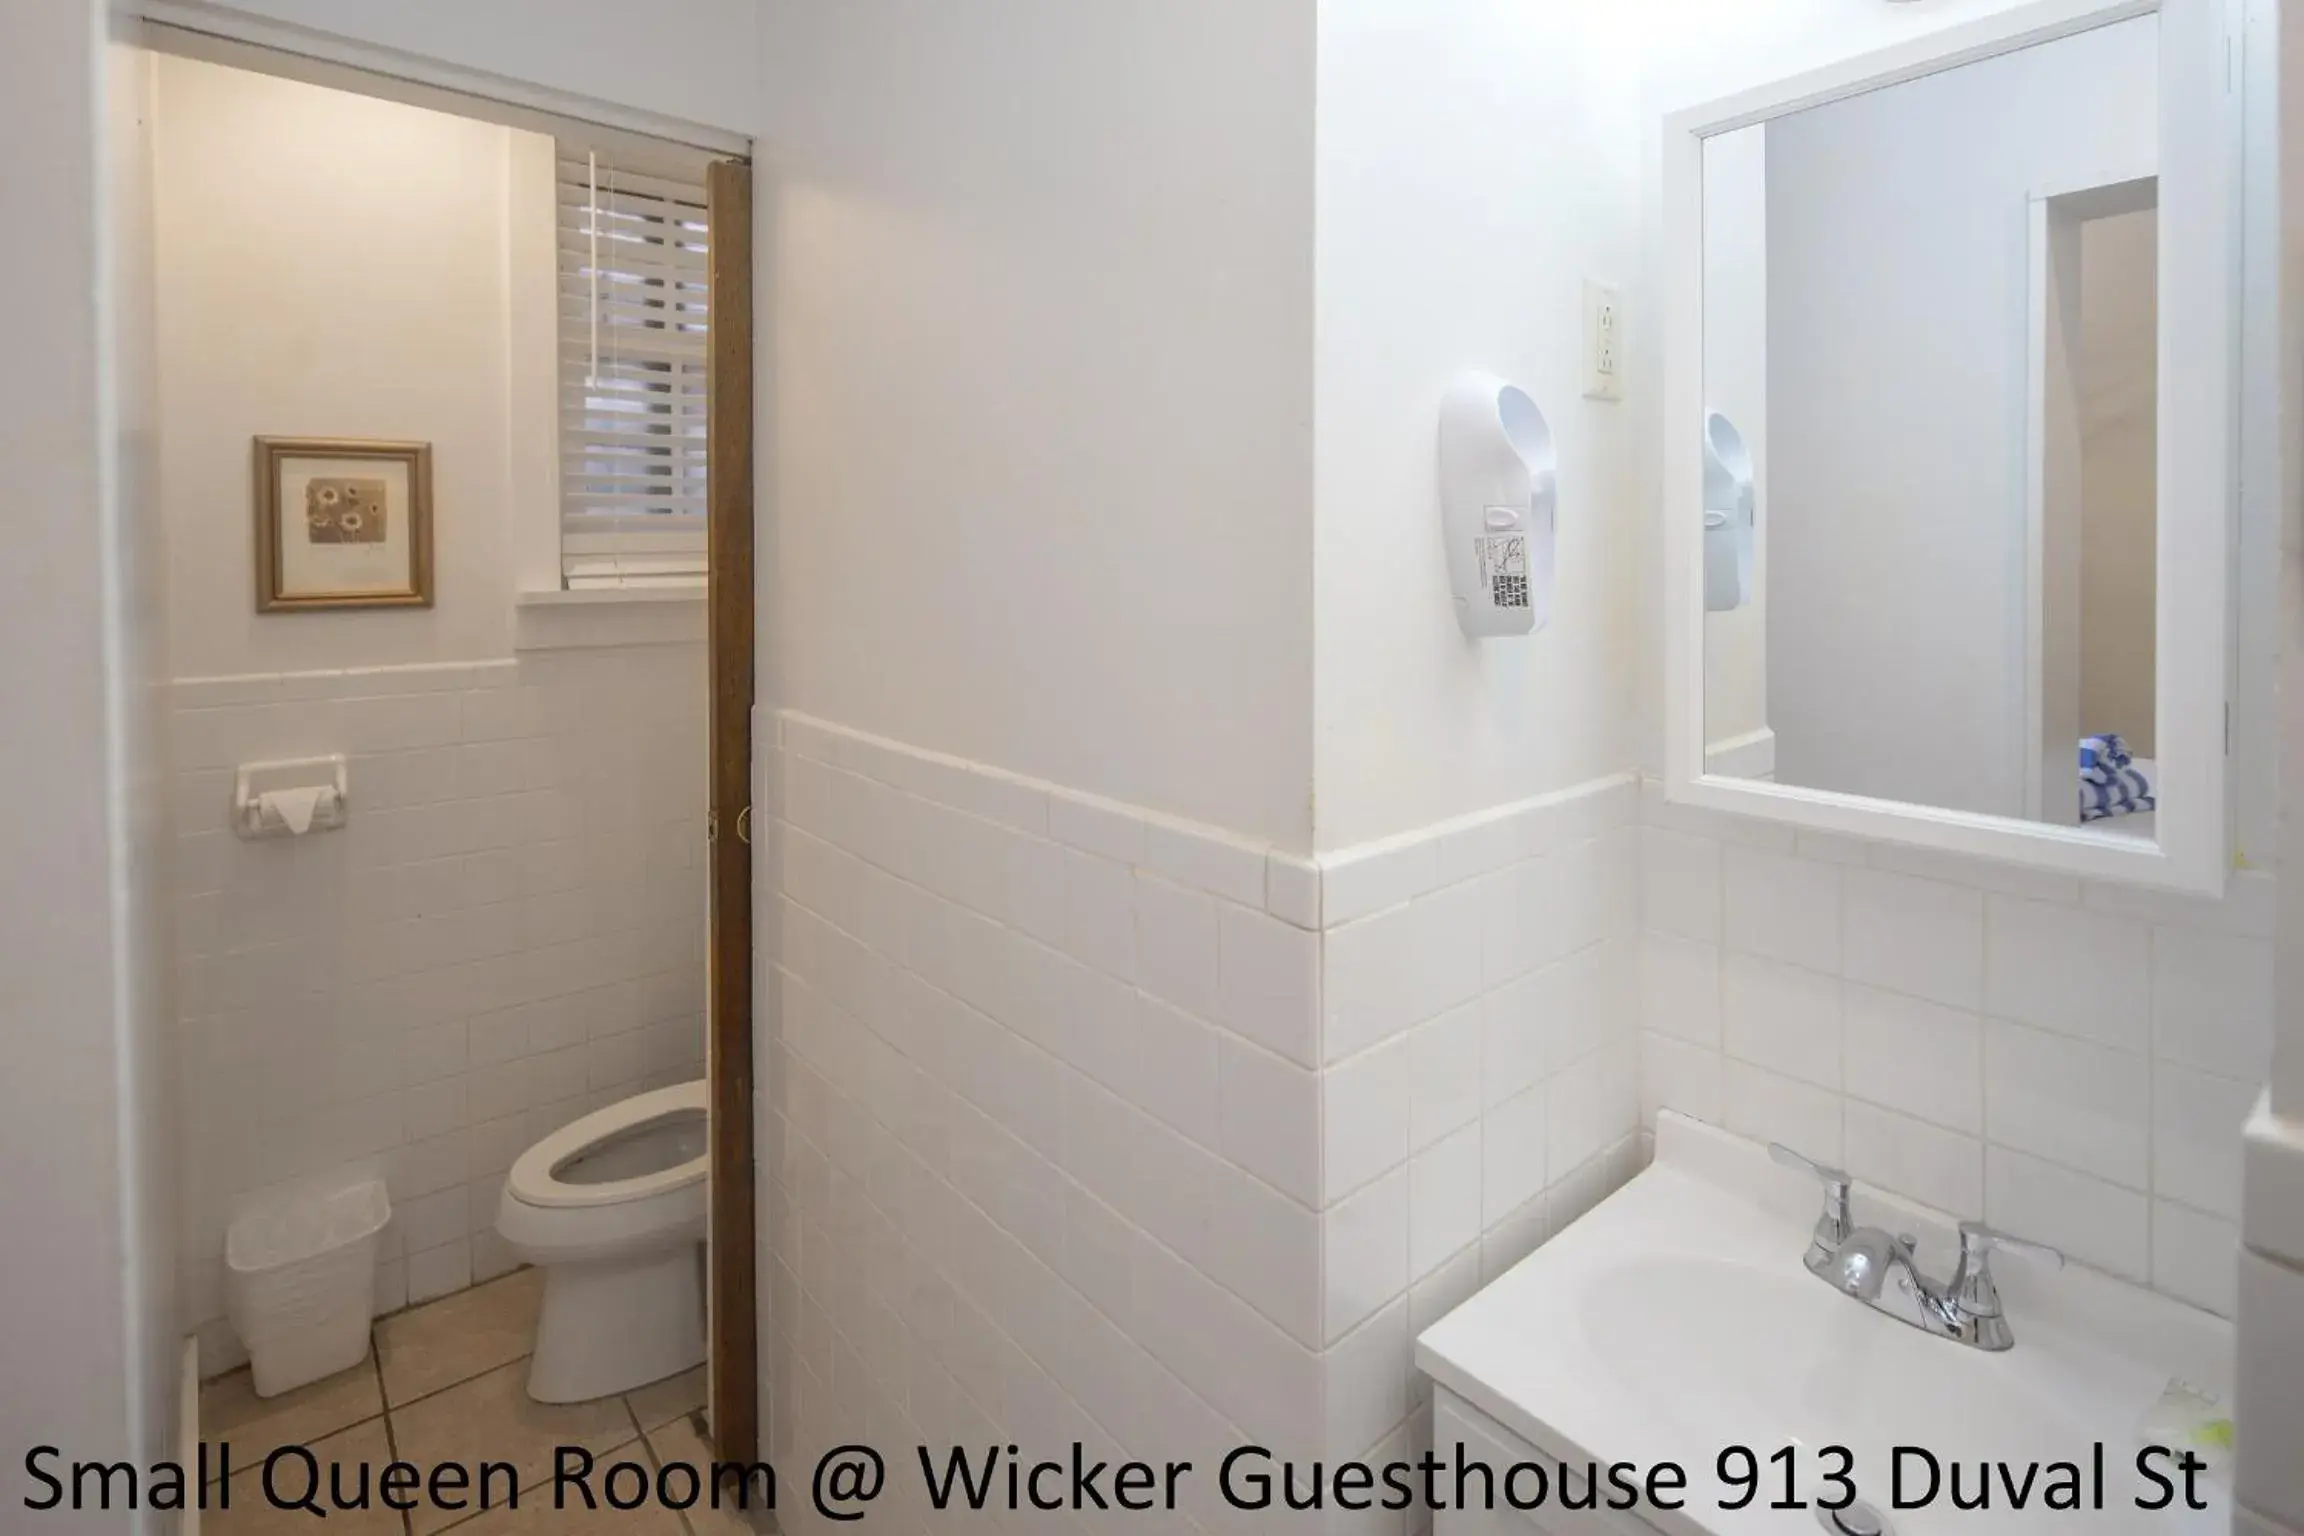 Toilet, Bathroom in Wicker Guesthouse